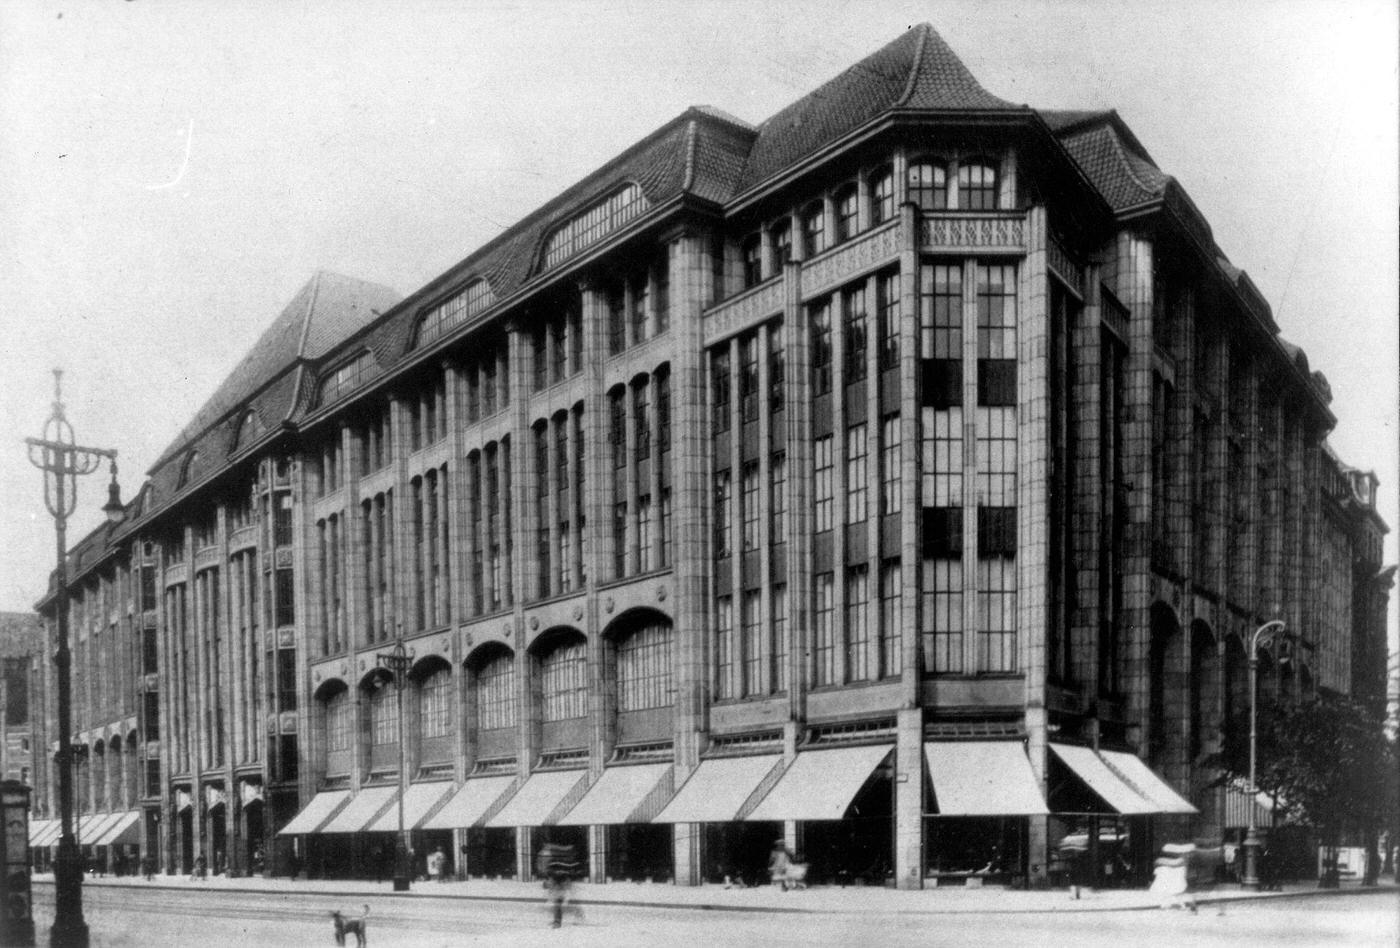 Department store "Karstadt" at Moenckebergstrasse in Hamburg, Germany, around 1912